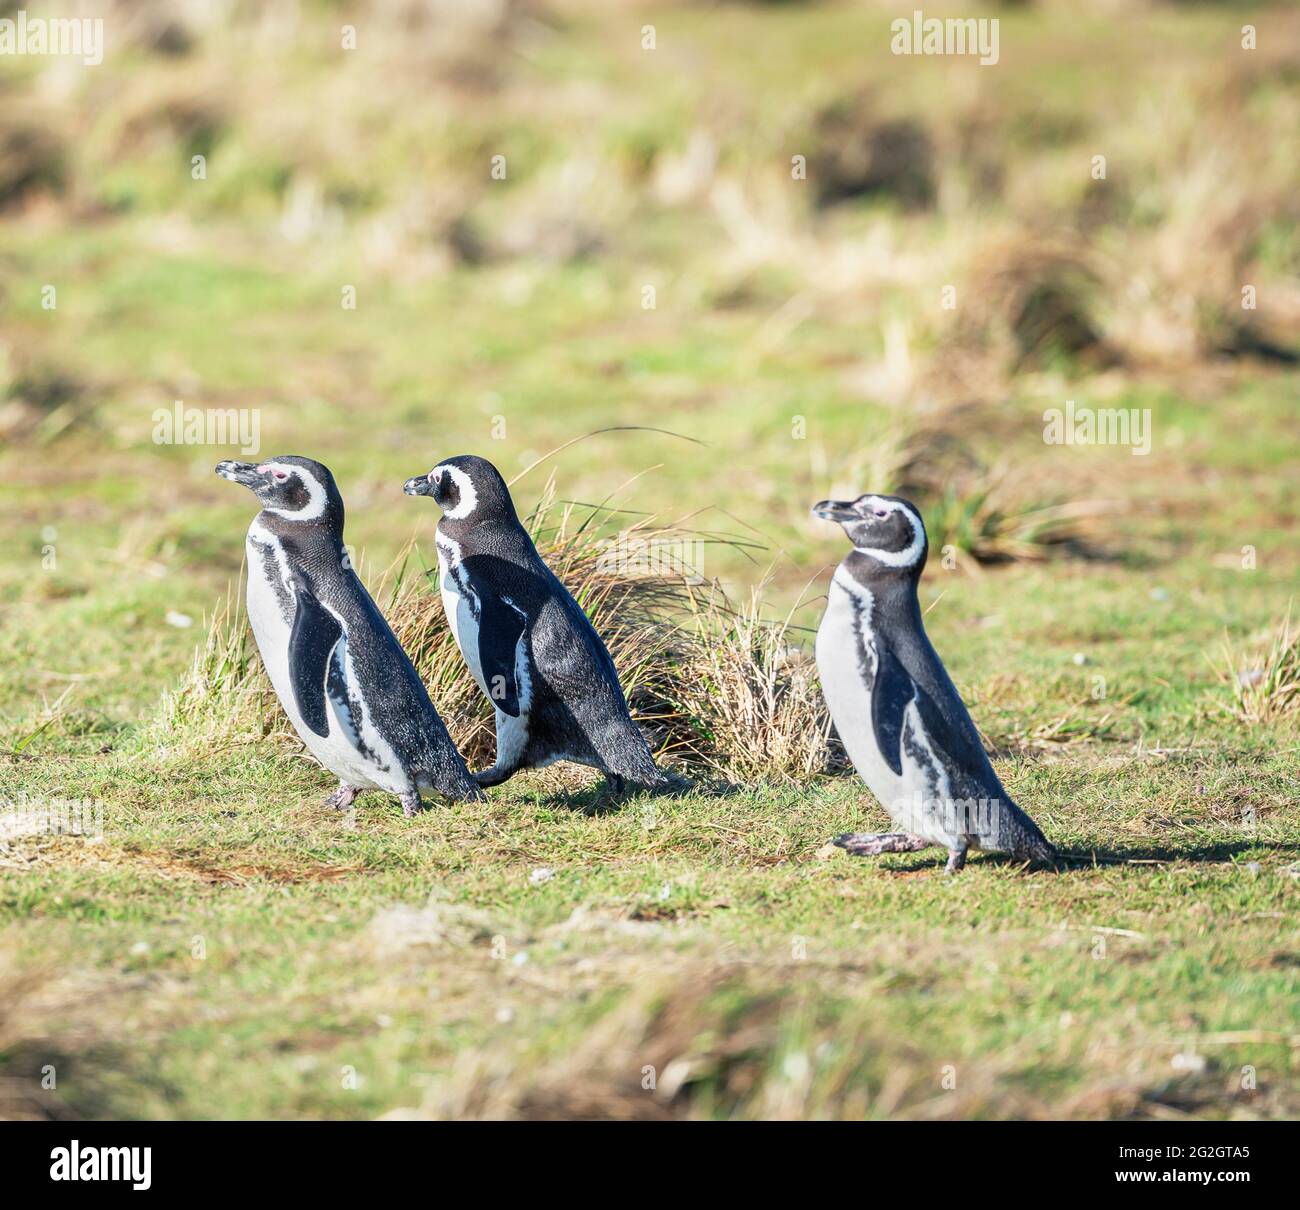 Magellanic penguins (Spheniscus magellanicus) walking, Sea Lion Island, Falkland Islands, South America Stock Photo